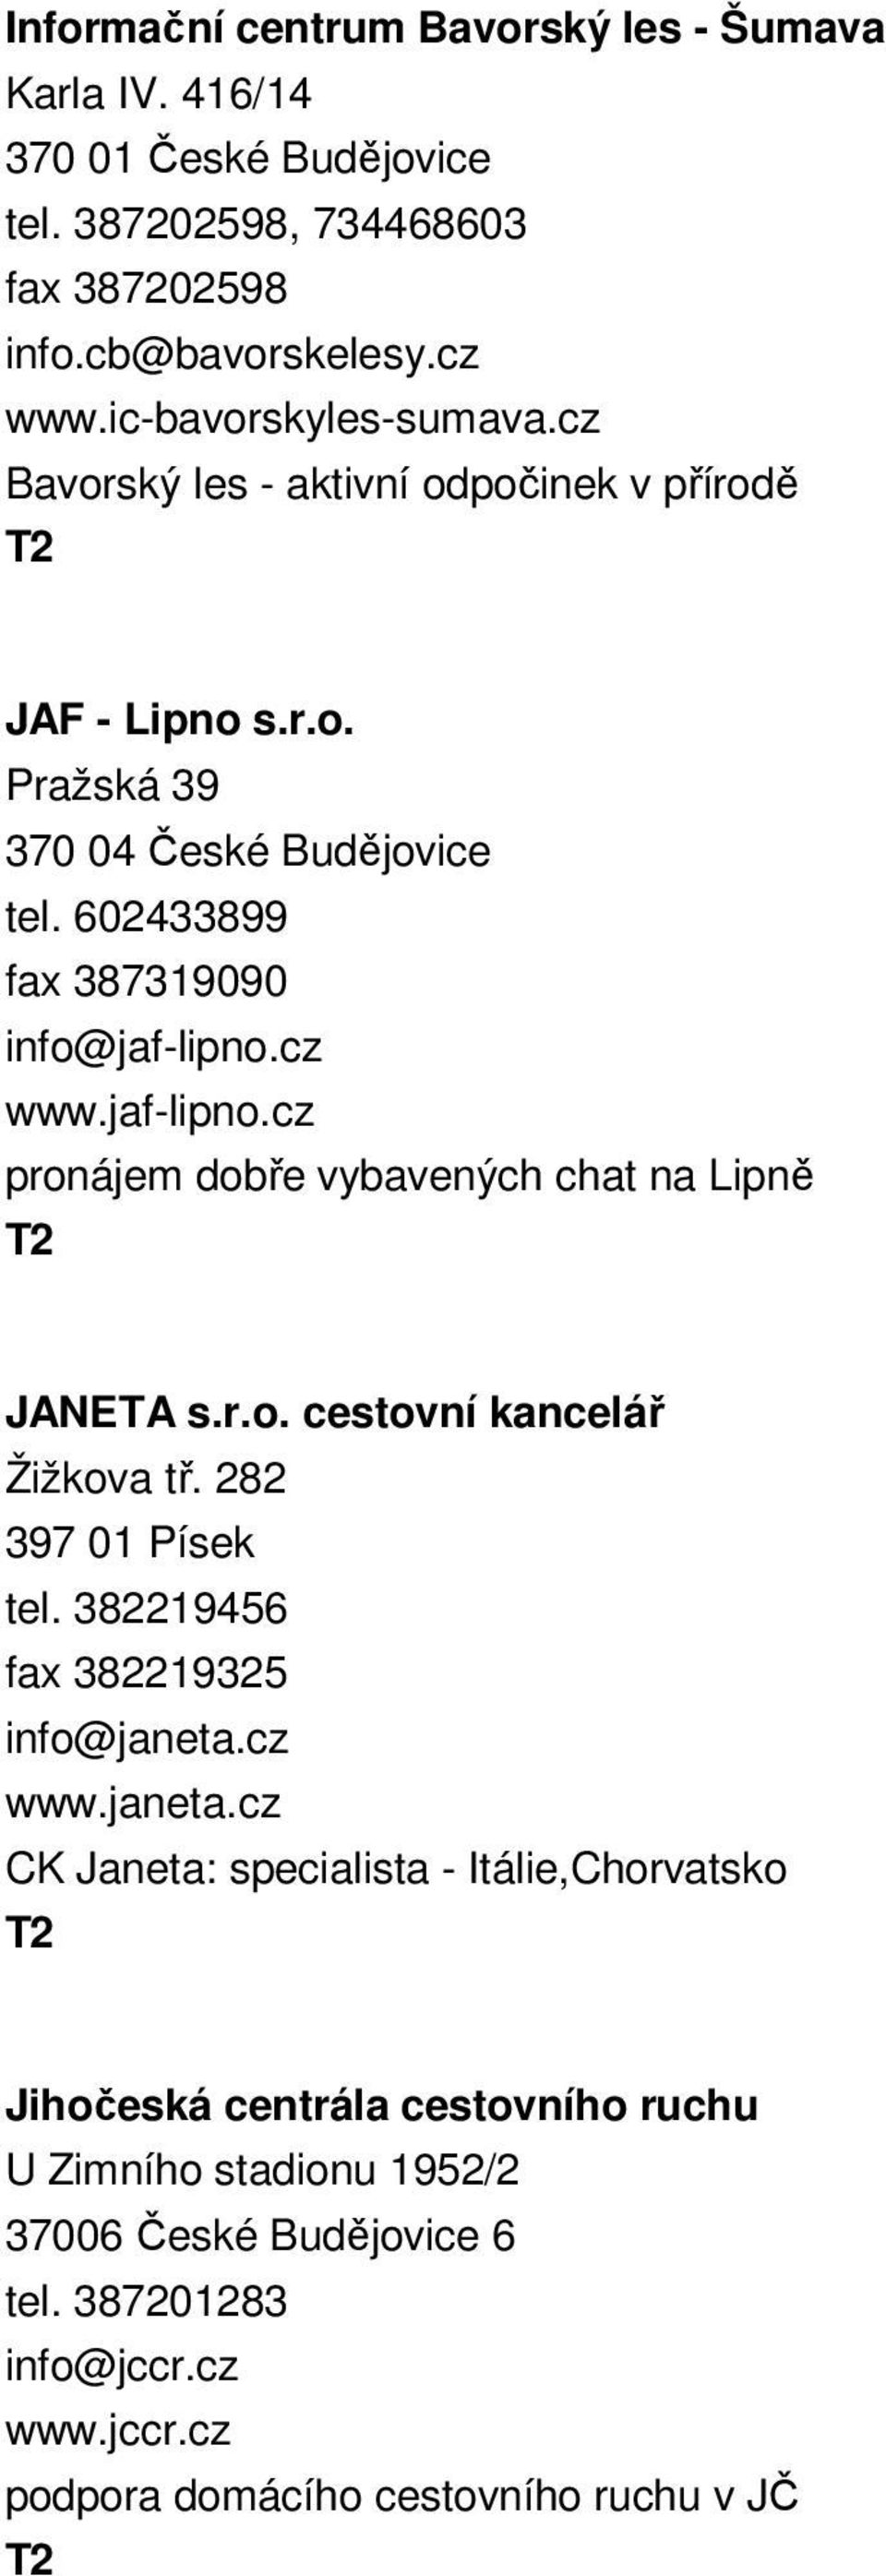 cz www.jaf-lipno.cz pronájem dobře vybavených chat na Lipně JANETA s.r.o. cestovní kancelář Žižkova tř. 282 397 01 Písek tel. 382219456 fax 382219325 info@janeta.